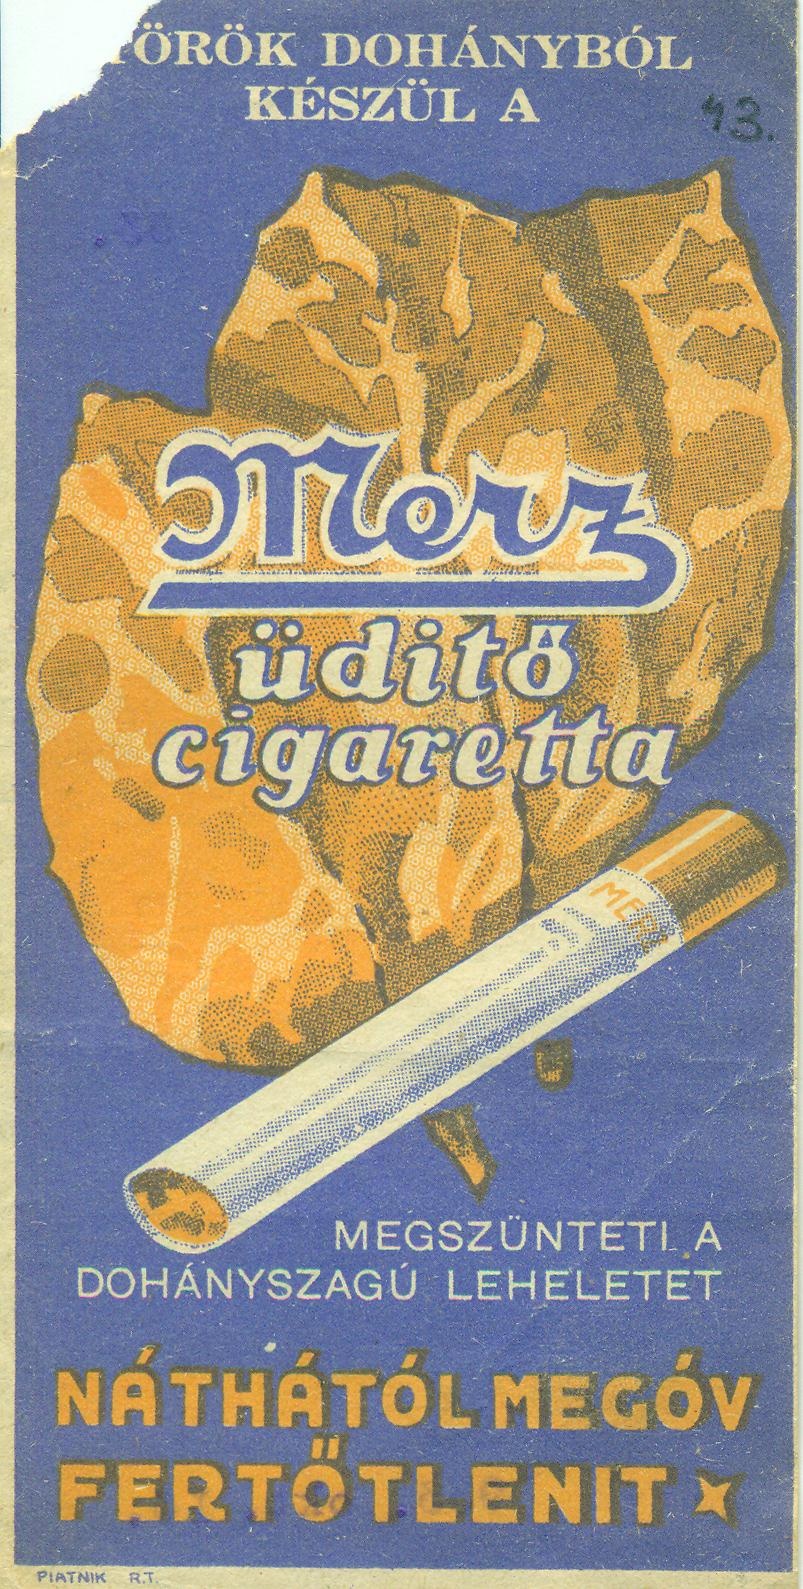 Merz üditő cigaretta (Magyar Kereskedelmi és Vendéglátóipari Múzeum CC BY-NC-SA)